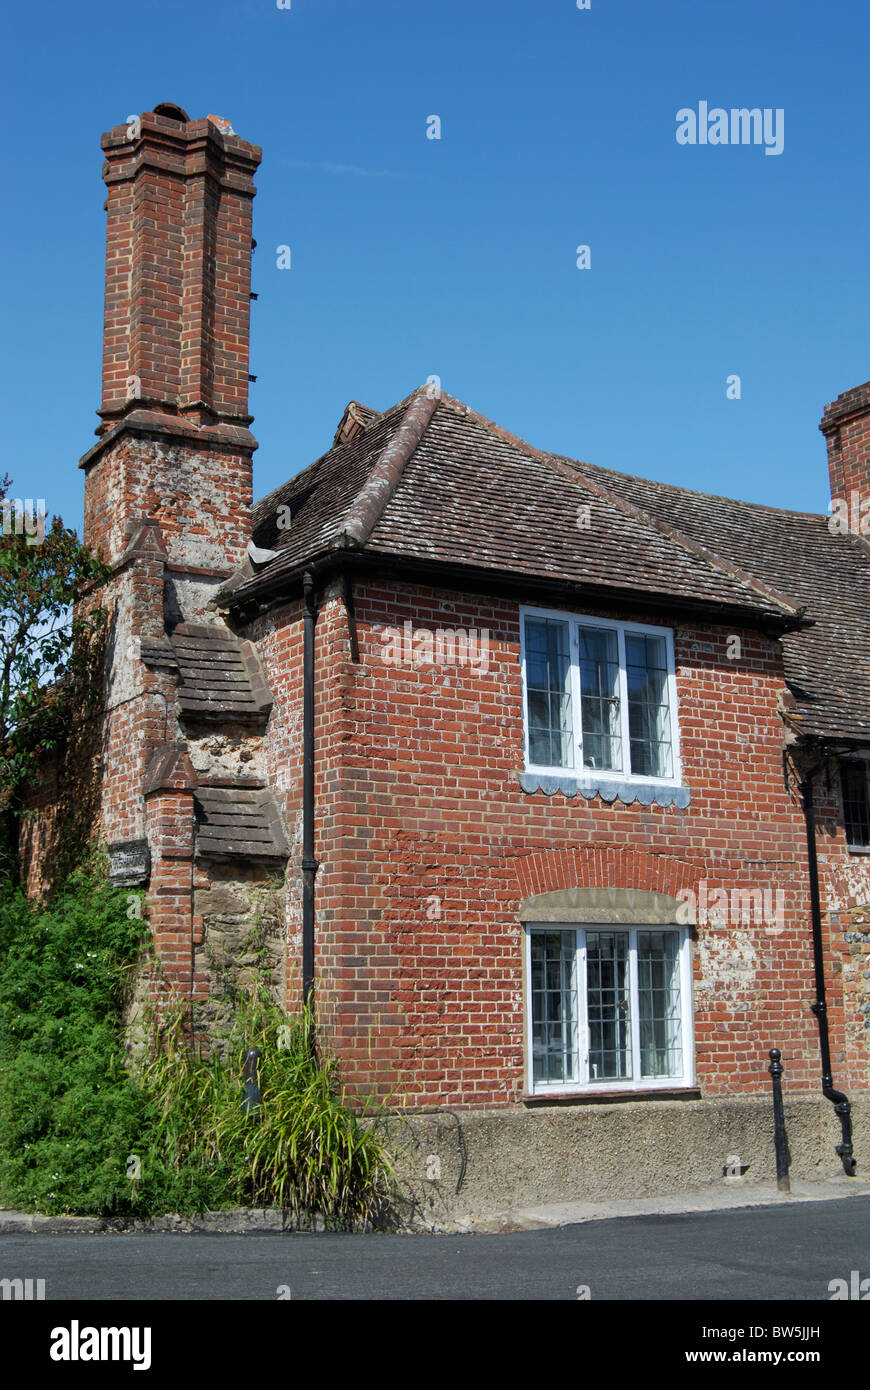 Ancien et pittoresque cottage en brique à Shere. Près de Dorking. Surrey. L'Angleterre Banque D'Images